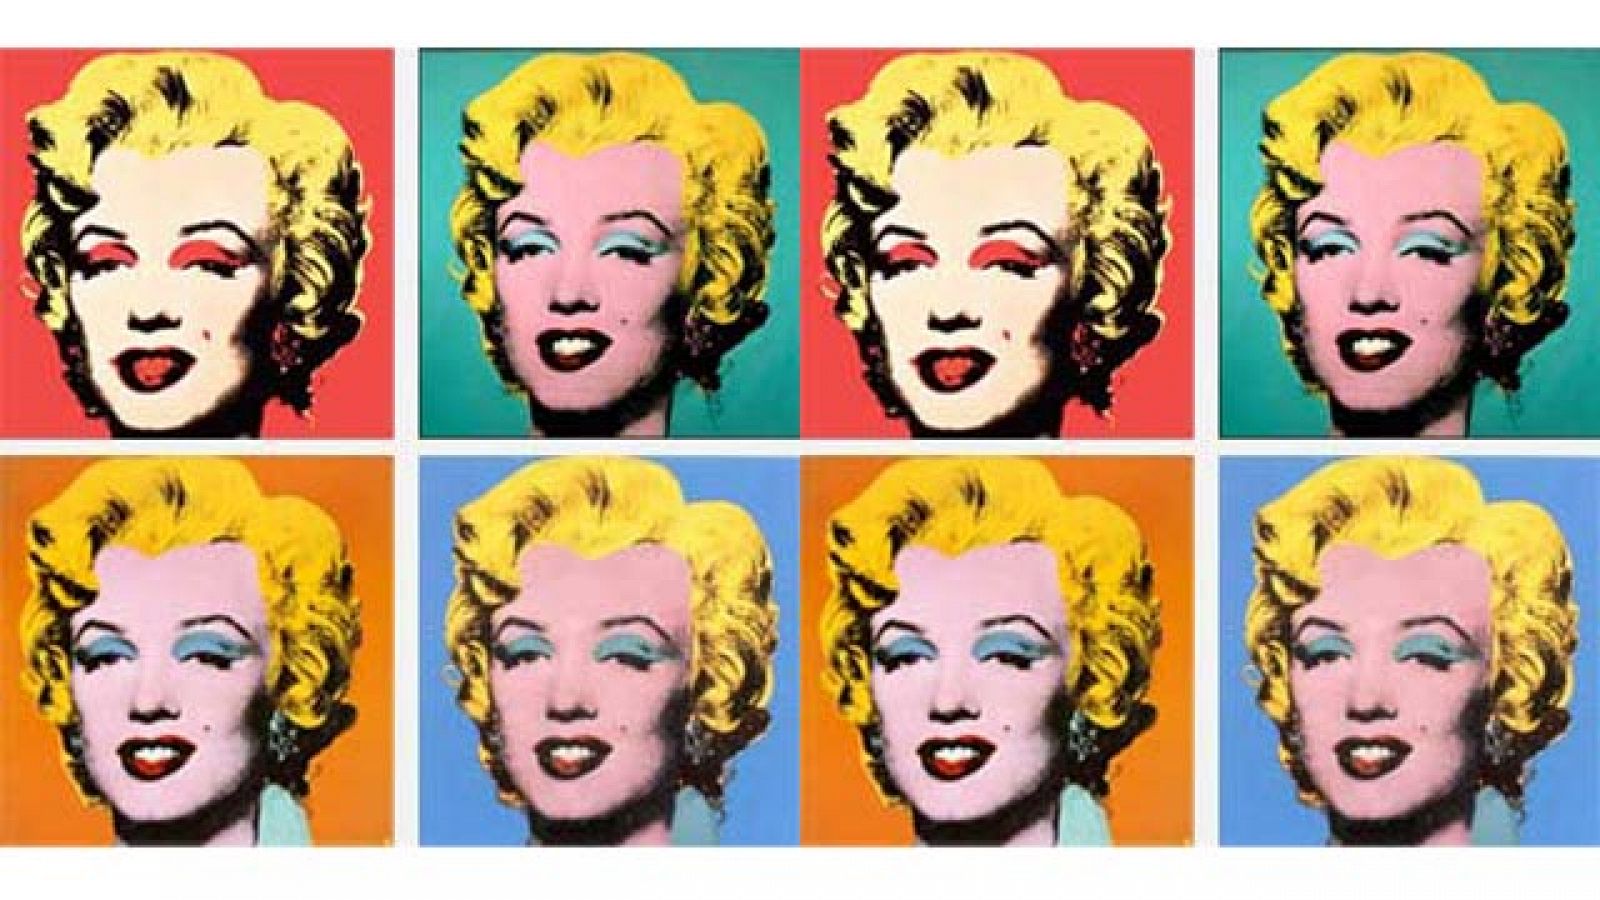 Más Gente - ¿Qué le pasó a Marilyn Monroe?